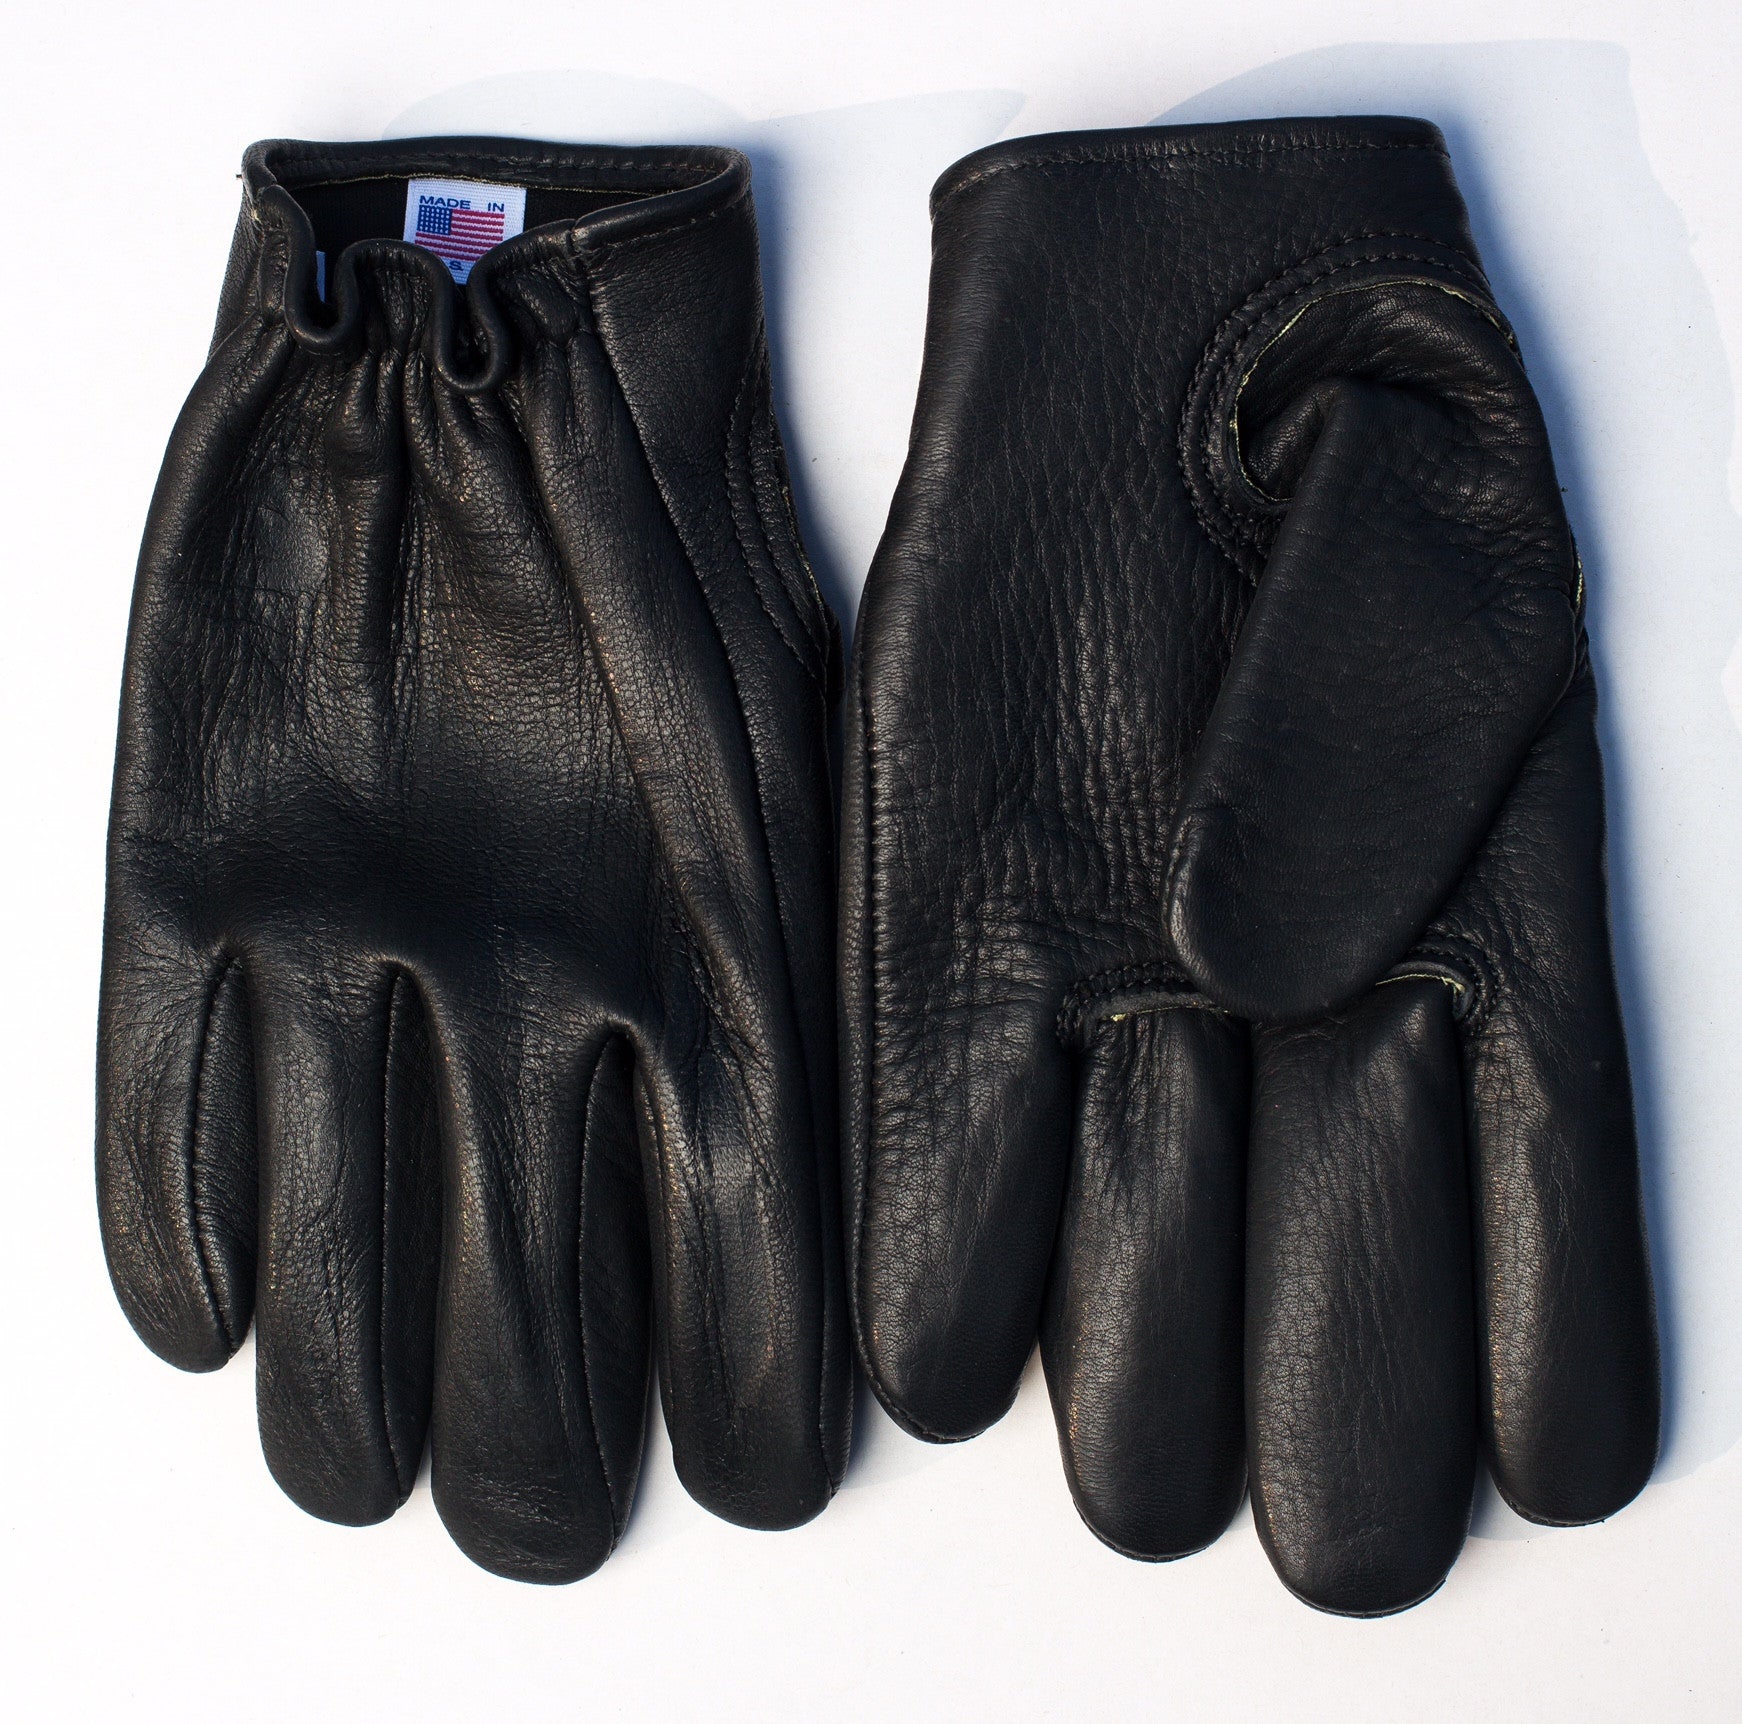 Choppahead Kevlar-Lined Defender Gloves (Men's) - Black